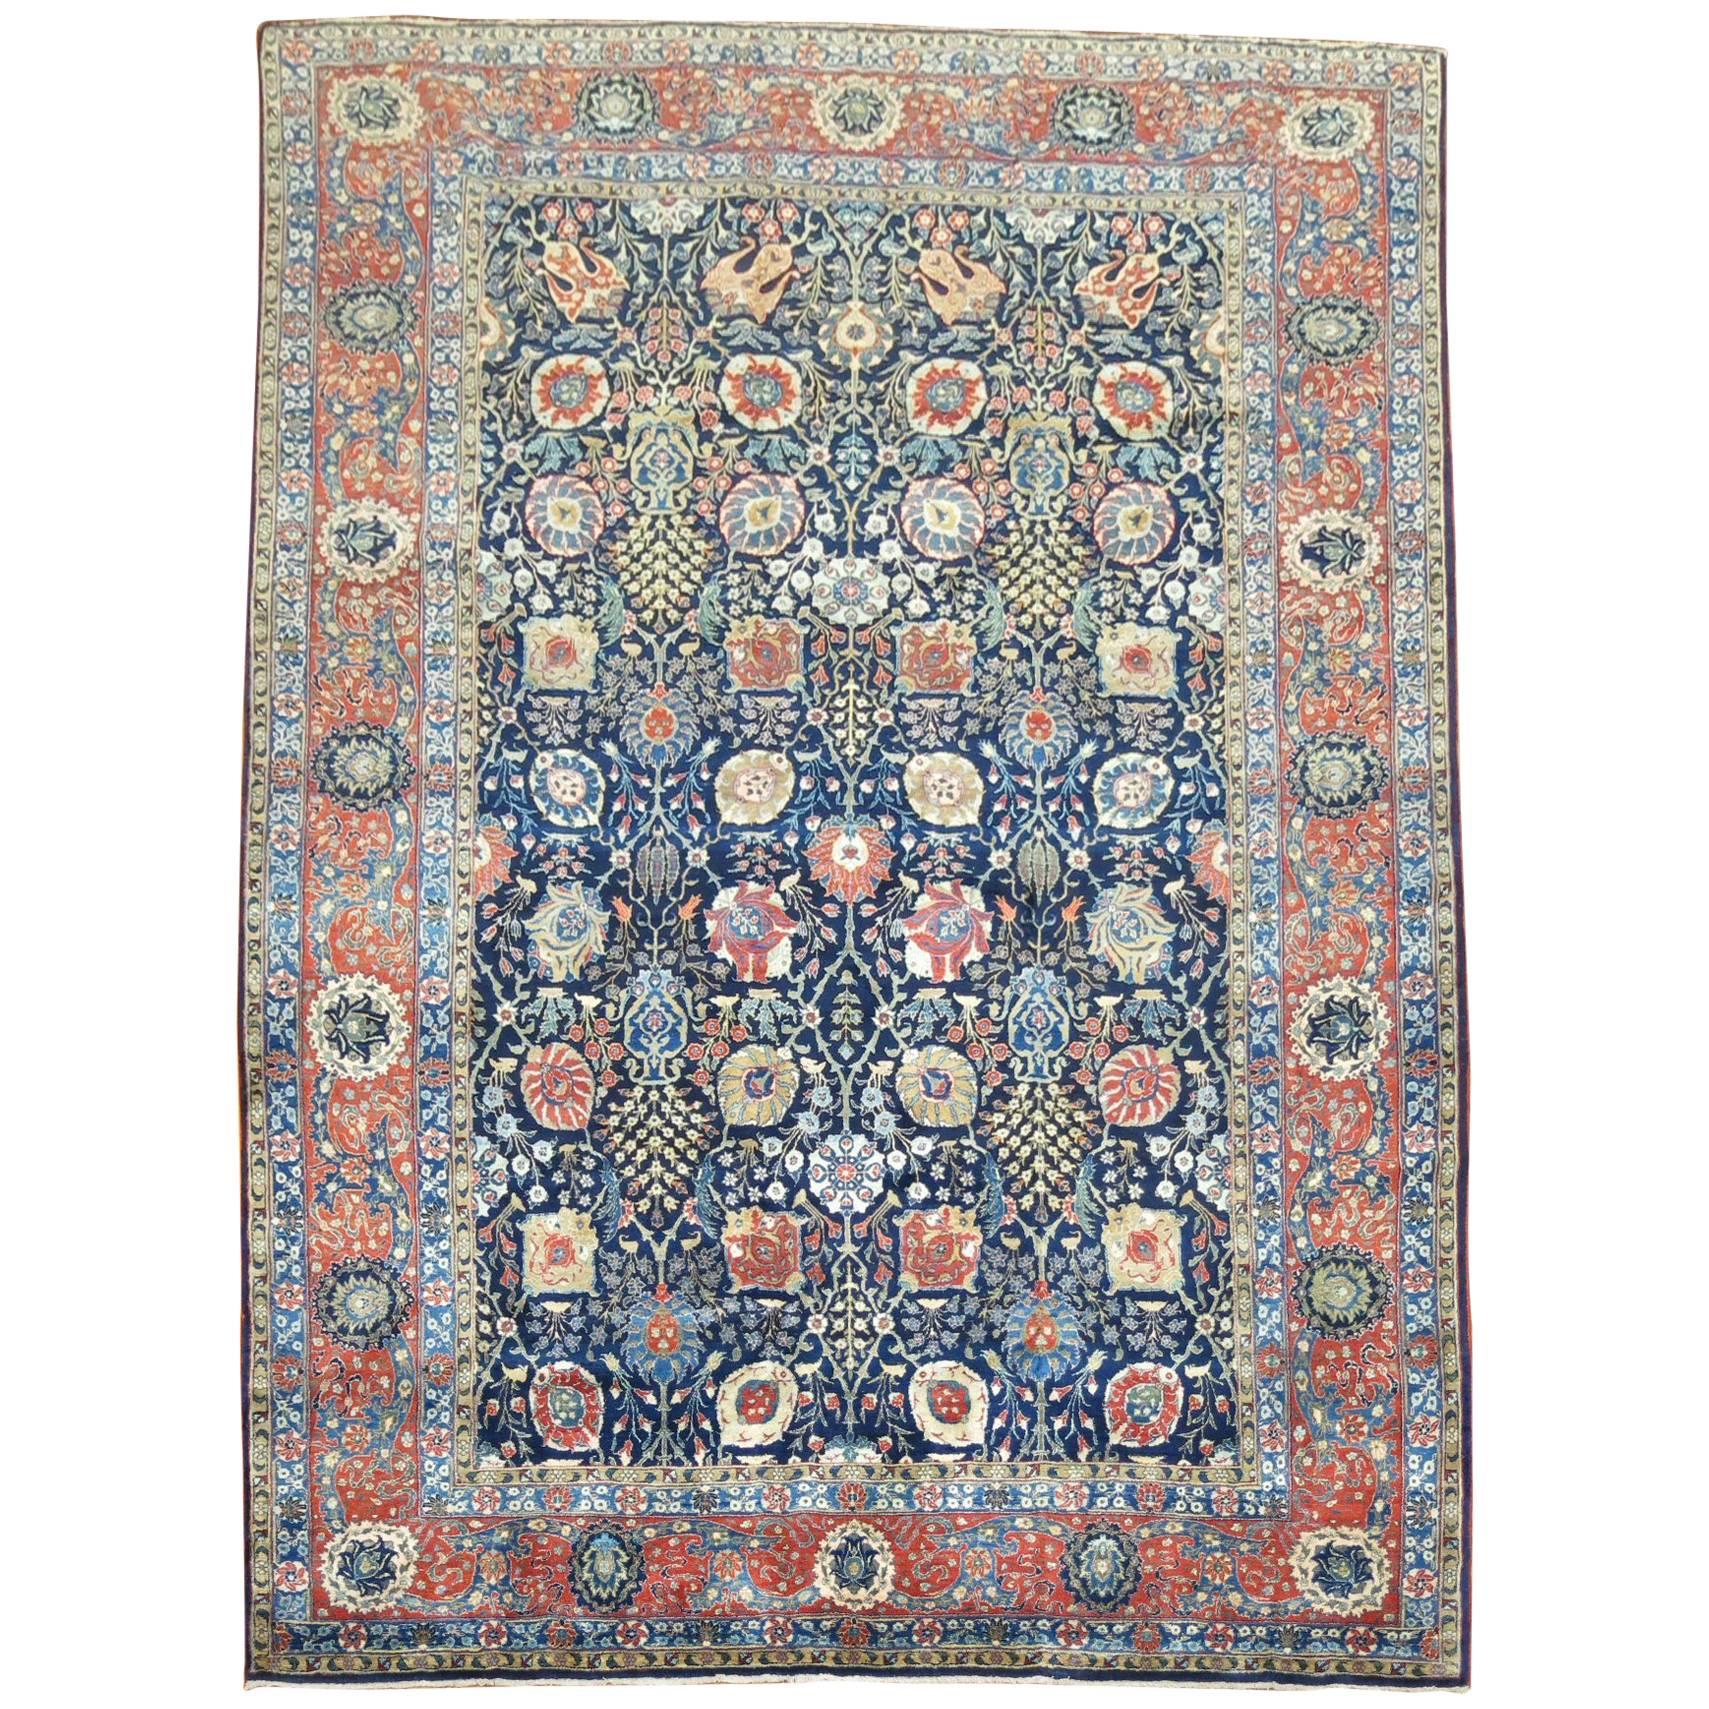 Antique Persian Tabriz Full Pile Carpet